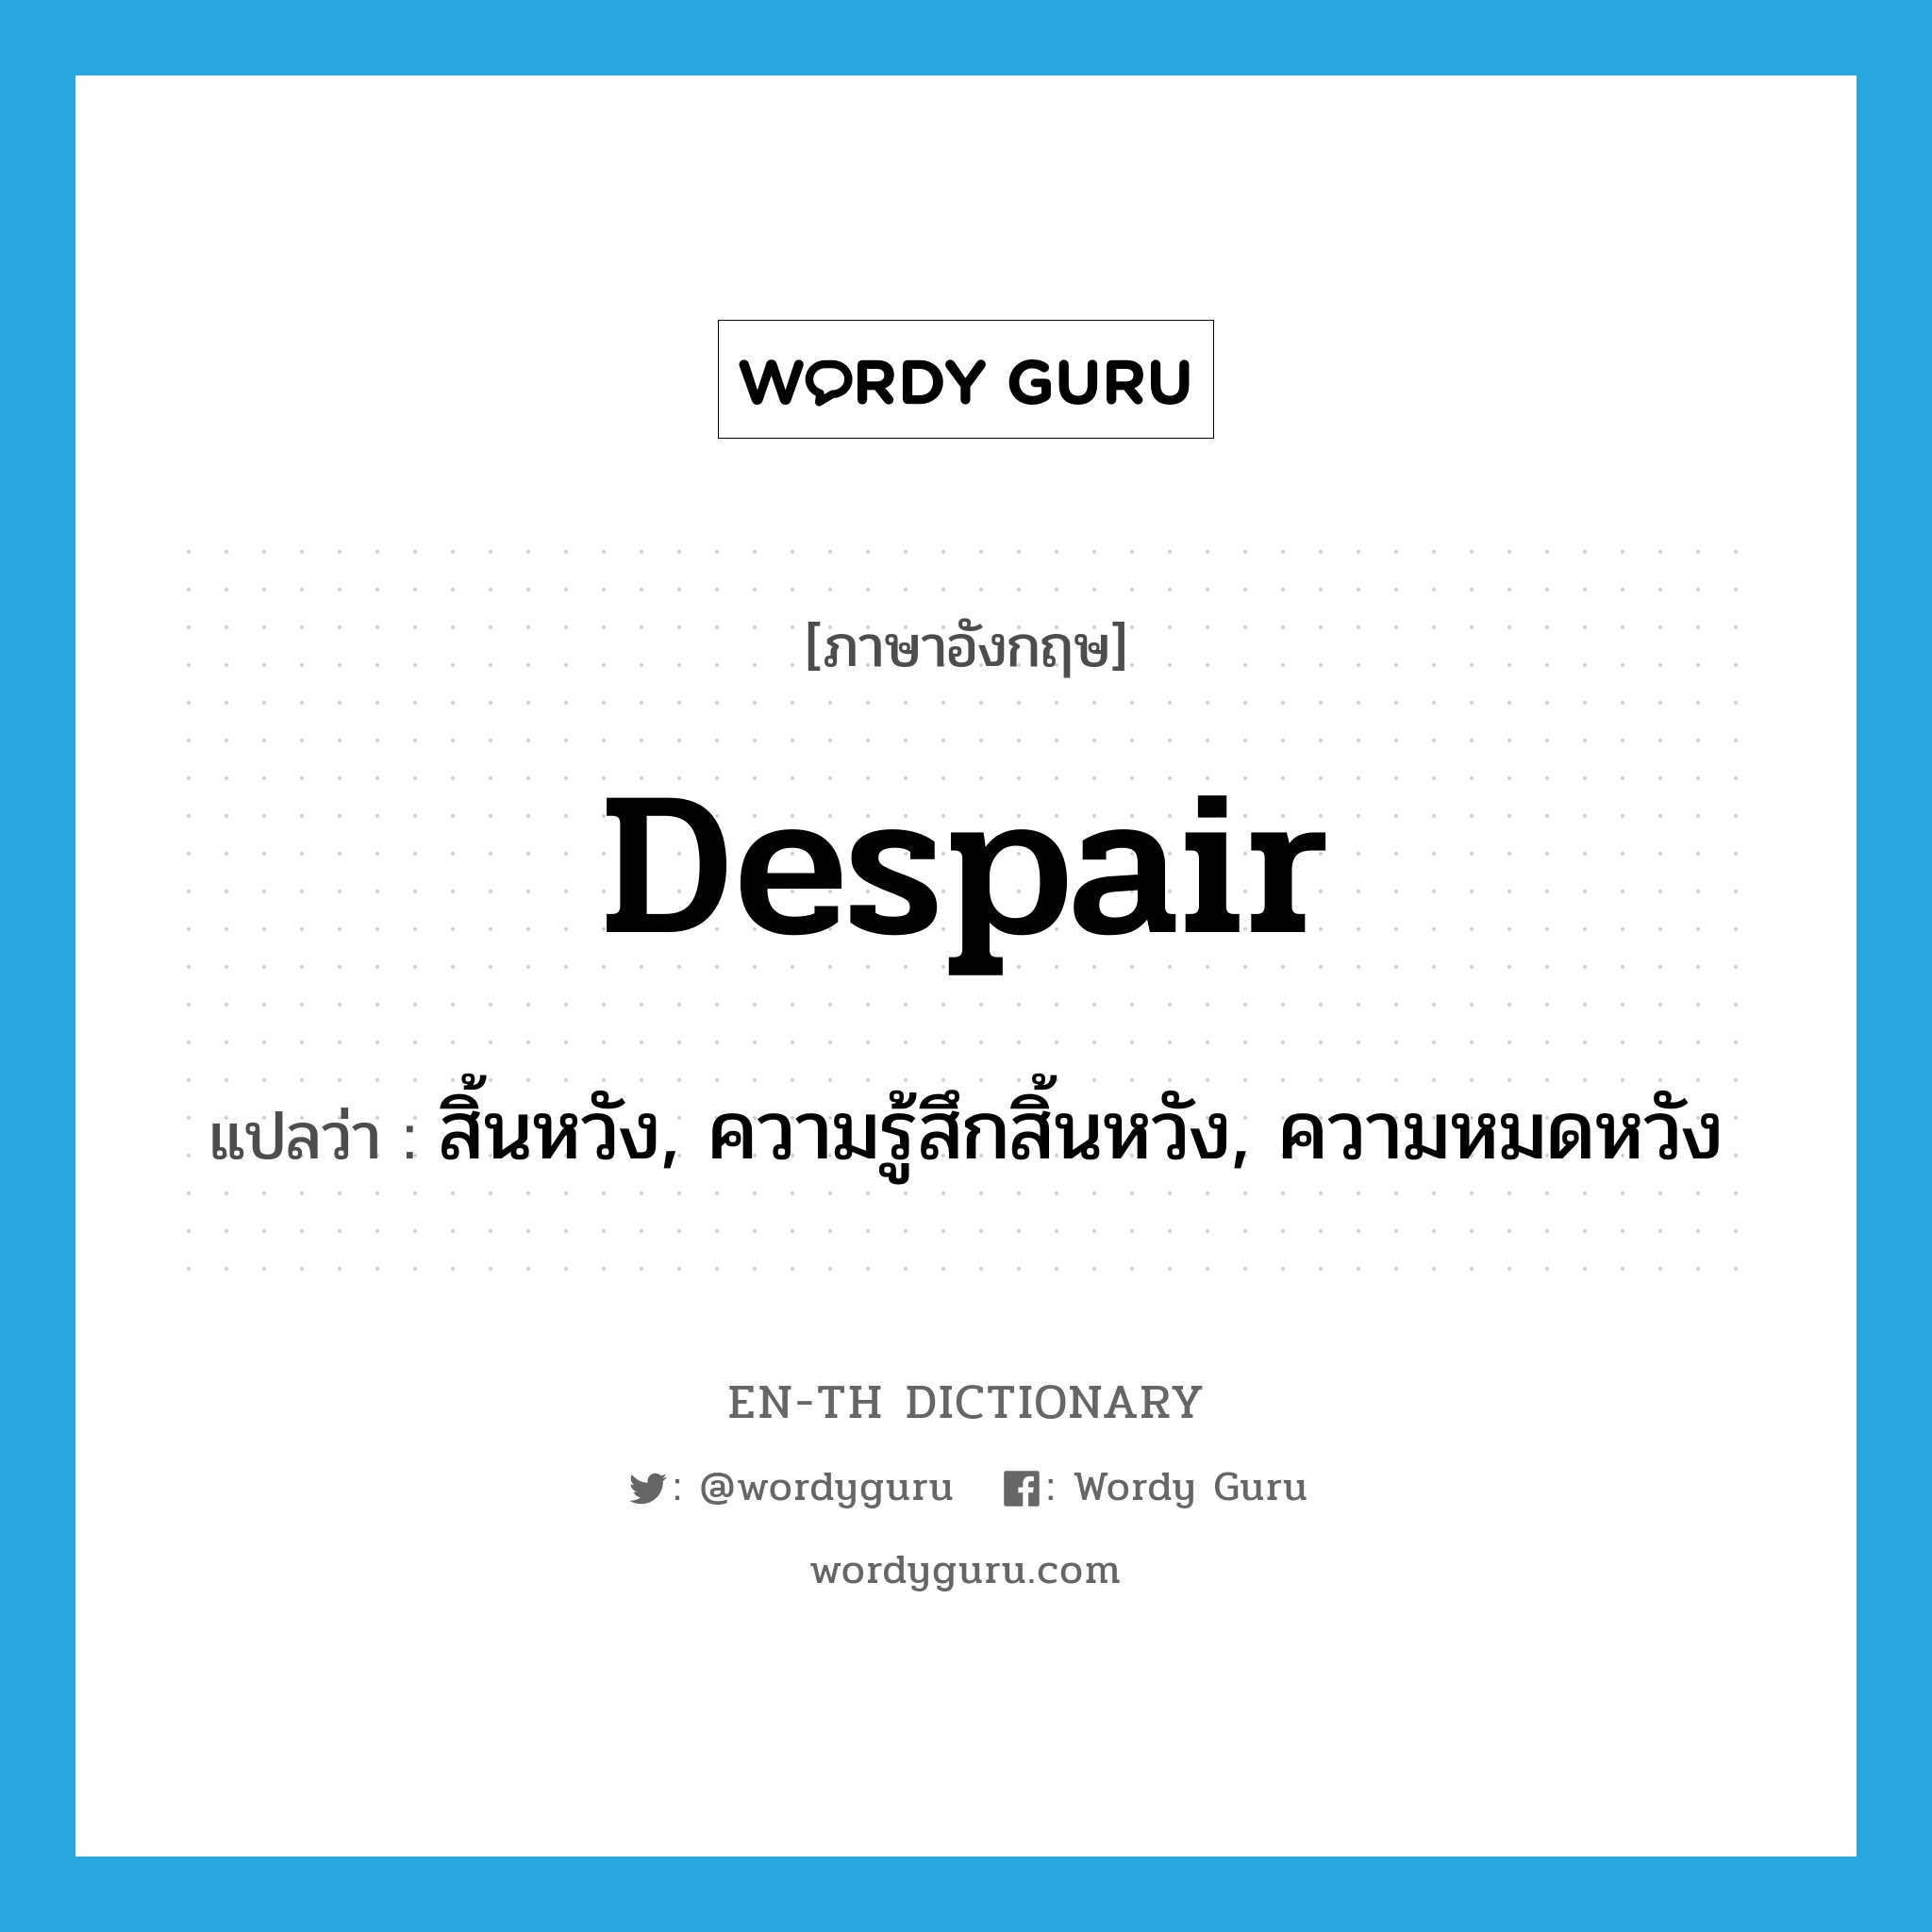 สิ้นหวัง, ความรู้สึกสิ้นหวัง, ความหมดหวัง ภาษาอังกฤษ? | Wordy Guru